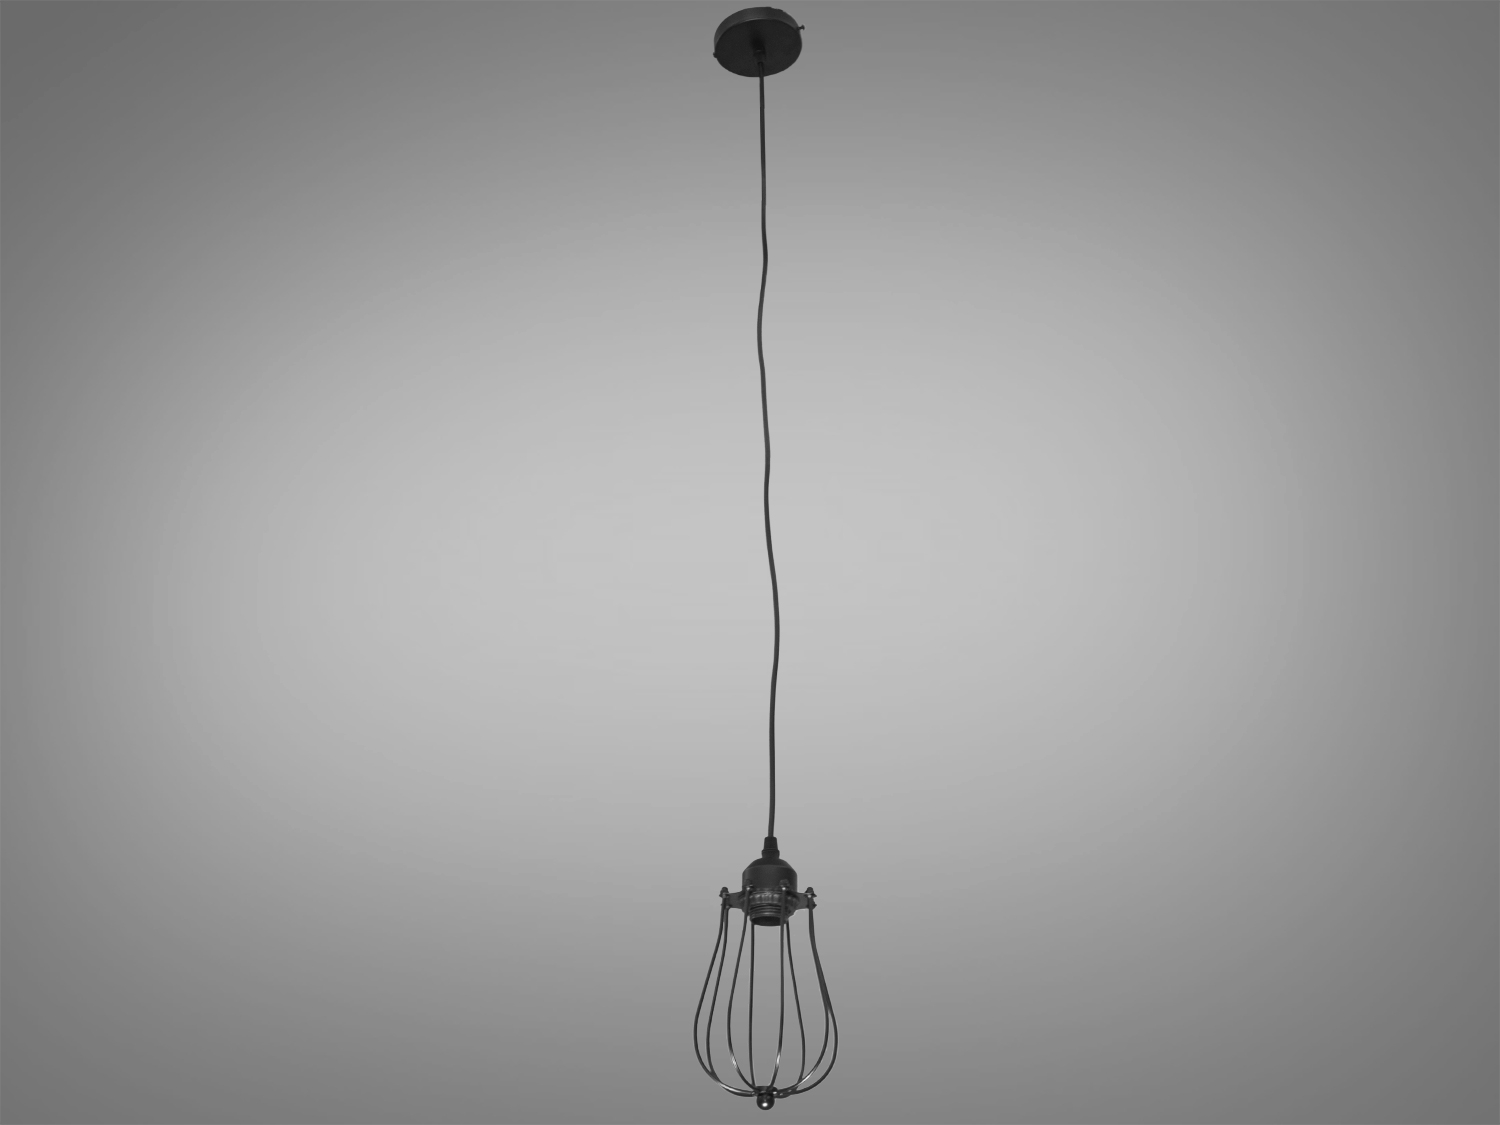 Світильник-підвіс в стилі Loft, привносить в простір поєднання промислового та сучасного дизайну. Її унікальність виражена в металевому плафоні, виготовленому зі сплетеного дроту, і теплому світлі лампочки Edison.
Основні Характеристики:
Металевий Плафон із Плетеного Дроту:
Металевий плафон виглядає, ніби він вручну плетений з дроту, створюючи цікавий інтер'єрний акцент та віддзеркалюючи простоту лофт-стилю.
Лампочка Edison:
В центрі плафону розташована лампочка Edison, яка надає освітленню теплоту та неповторний вигляд, підкреслюючи індустріальний характер.
Простий і Ефективний Дизайн:
Люстра має простий, але ефективний дизайн, який дозволяє впроваджувати її в різні стилі інтер'єру.
Металевий Відтінок:
Металевий відтінок плафону може бути вибраний відповідно до загального кольорового рішення приміщення.
Сфера застосування:
Кухня чи Їдальня:
Ідеально підійде для настільного освітлення над кухонним столом чи барною стійкою, додаючи атмосферу теплоти та стилю.
Лофтові Простори:
Лофтові приміщення чи студії, де цінується сучасний індустріальний дизайн.
Кафе або Бари:
У комерційних приміщеннях, таких як кафе або бари, де стиль лофт завжди в тренді.
Творчі Робочі Простори:
В офісах чи творчих просторах (арт-простори, коворкінги, квеструми, фото-студії  та інш., де важливий естетичний дизайн і функціональність.
Цей світильник в стилі Loft створює не лише практичне світло, але і виражає тепло та стиль, вносячи унікальний шарм в будь-яке приміщення.
 Лампочка в комплект не входить.